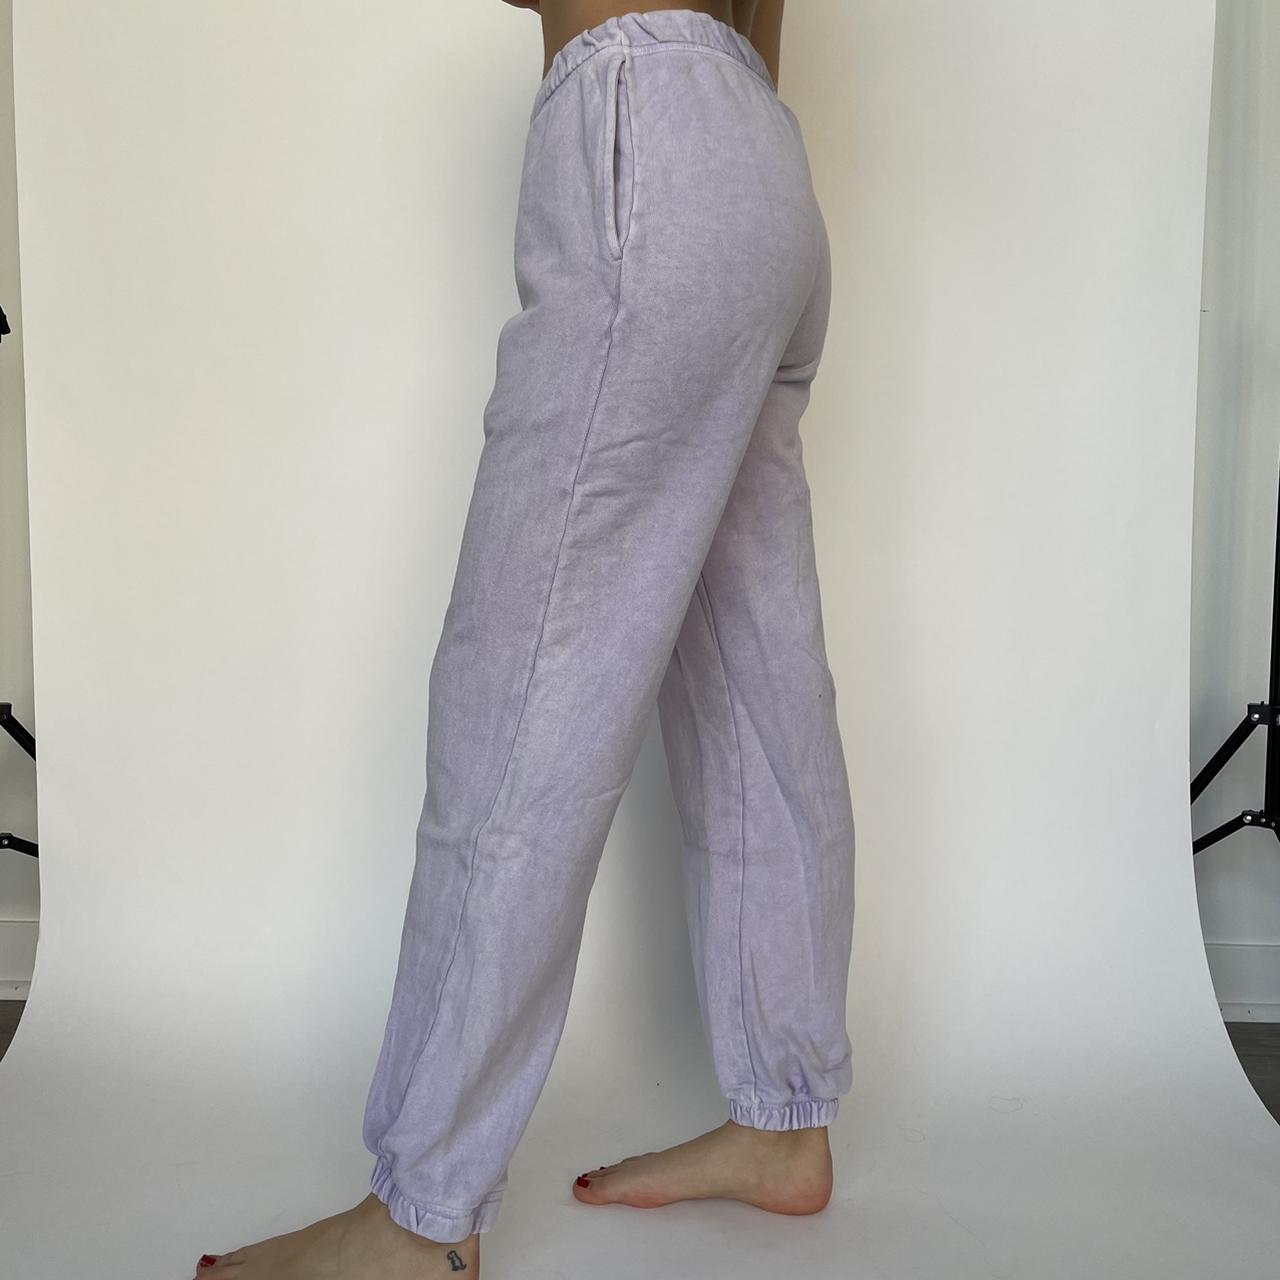 Lavender sweatpants great condition! #purple... - Depop